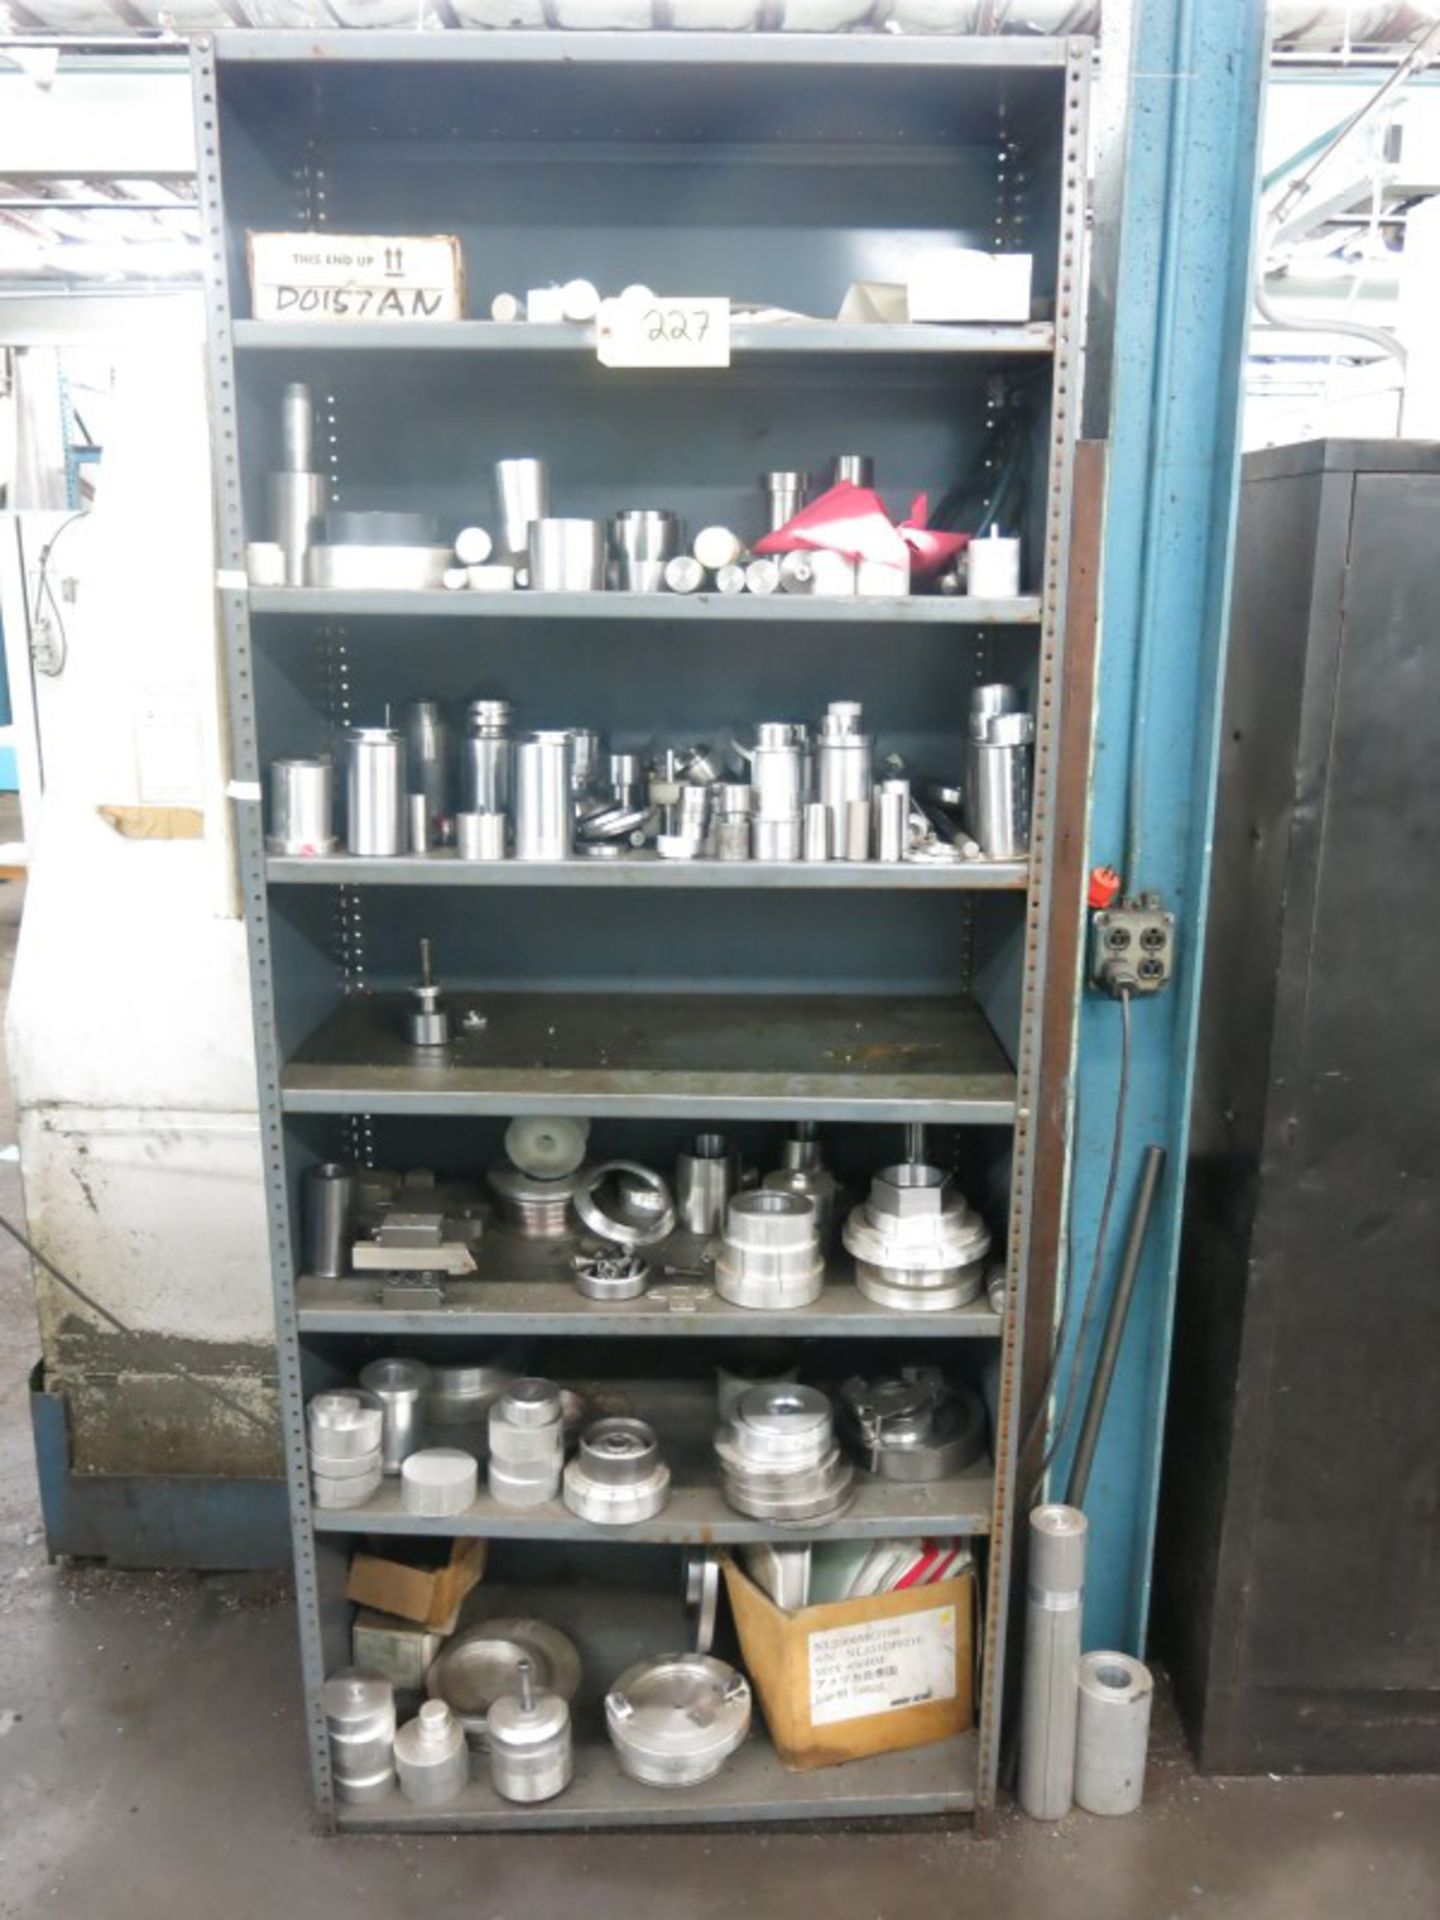 2-Door Metal Cabinet & Shelving Unit w/ Contents - Image 3 of 3